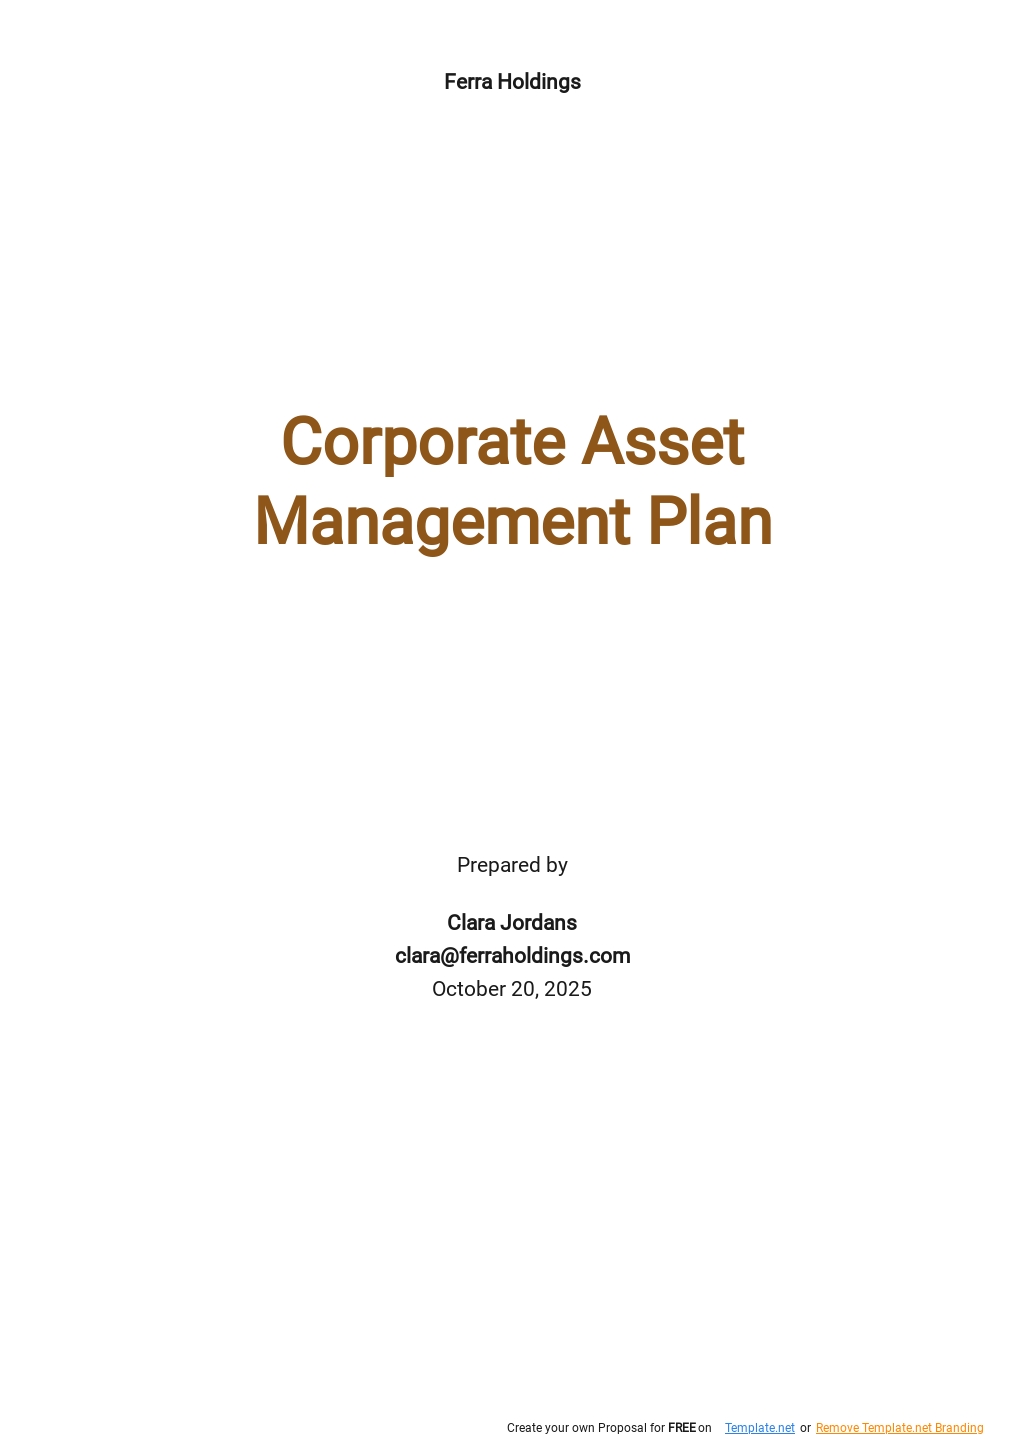 Corporate Asset Management Plan Template.jpe